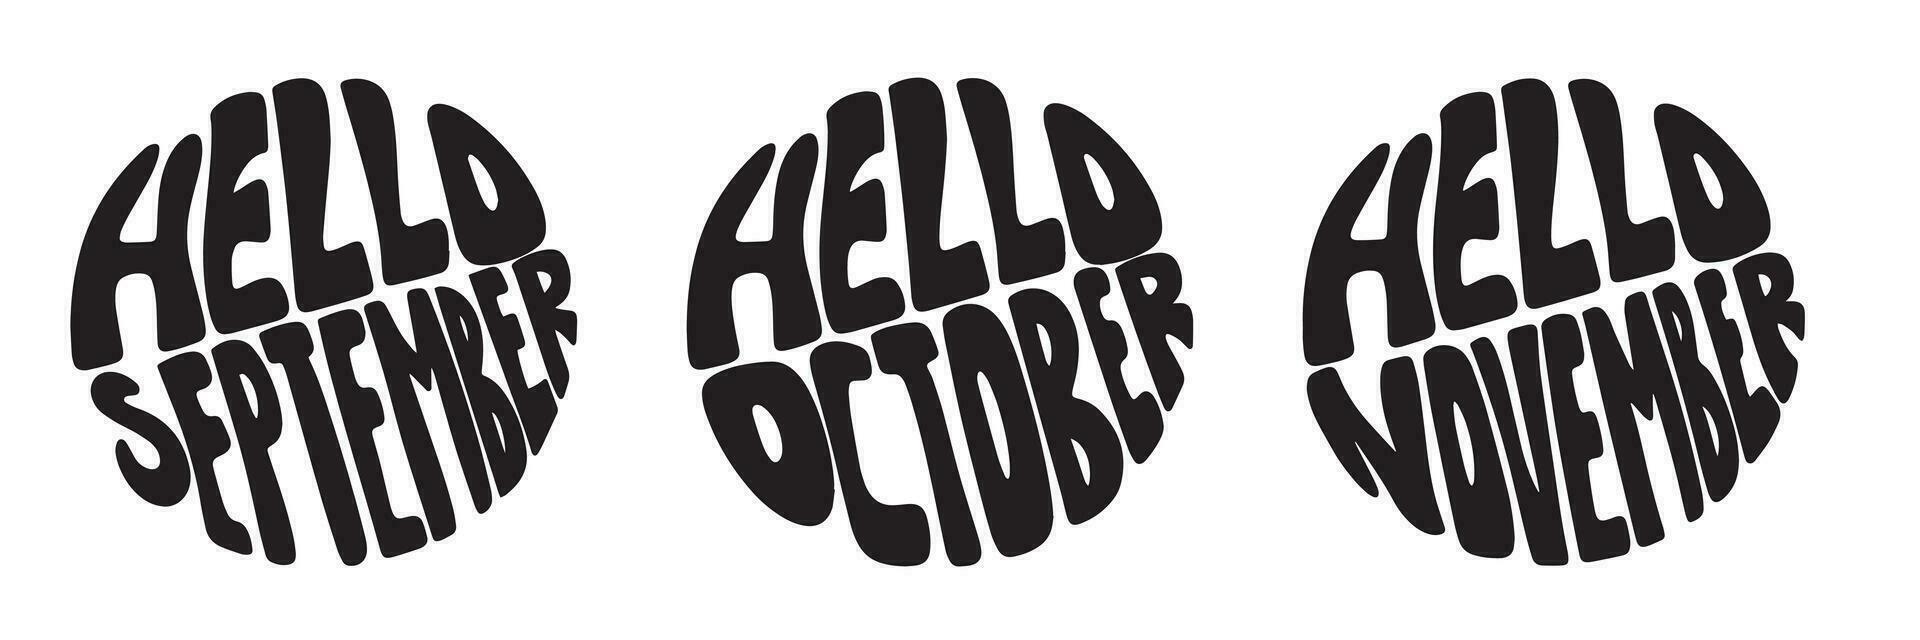 Ciao settembre, Ciao ottobre, Ciao novembre. mano disegnato autunno lettering nel cerchio. vettore illustrazione.